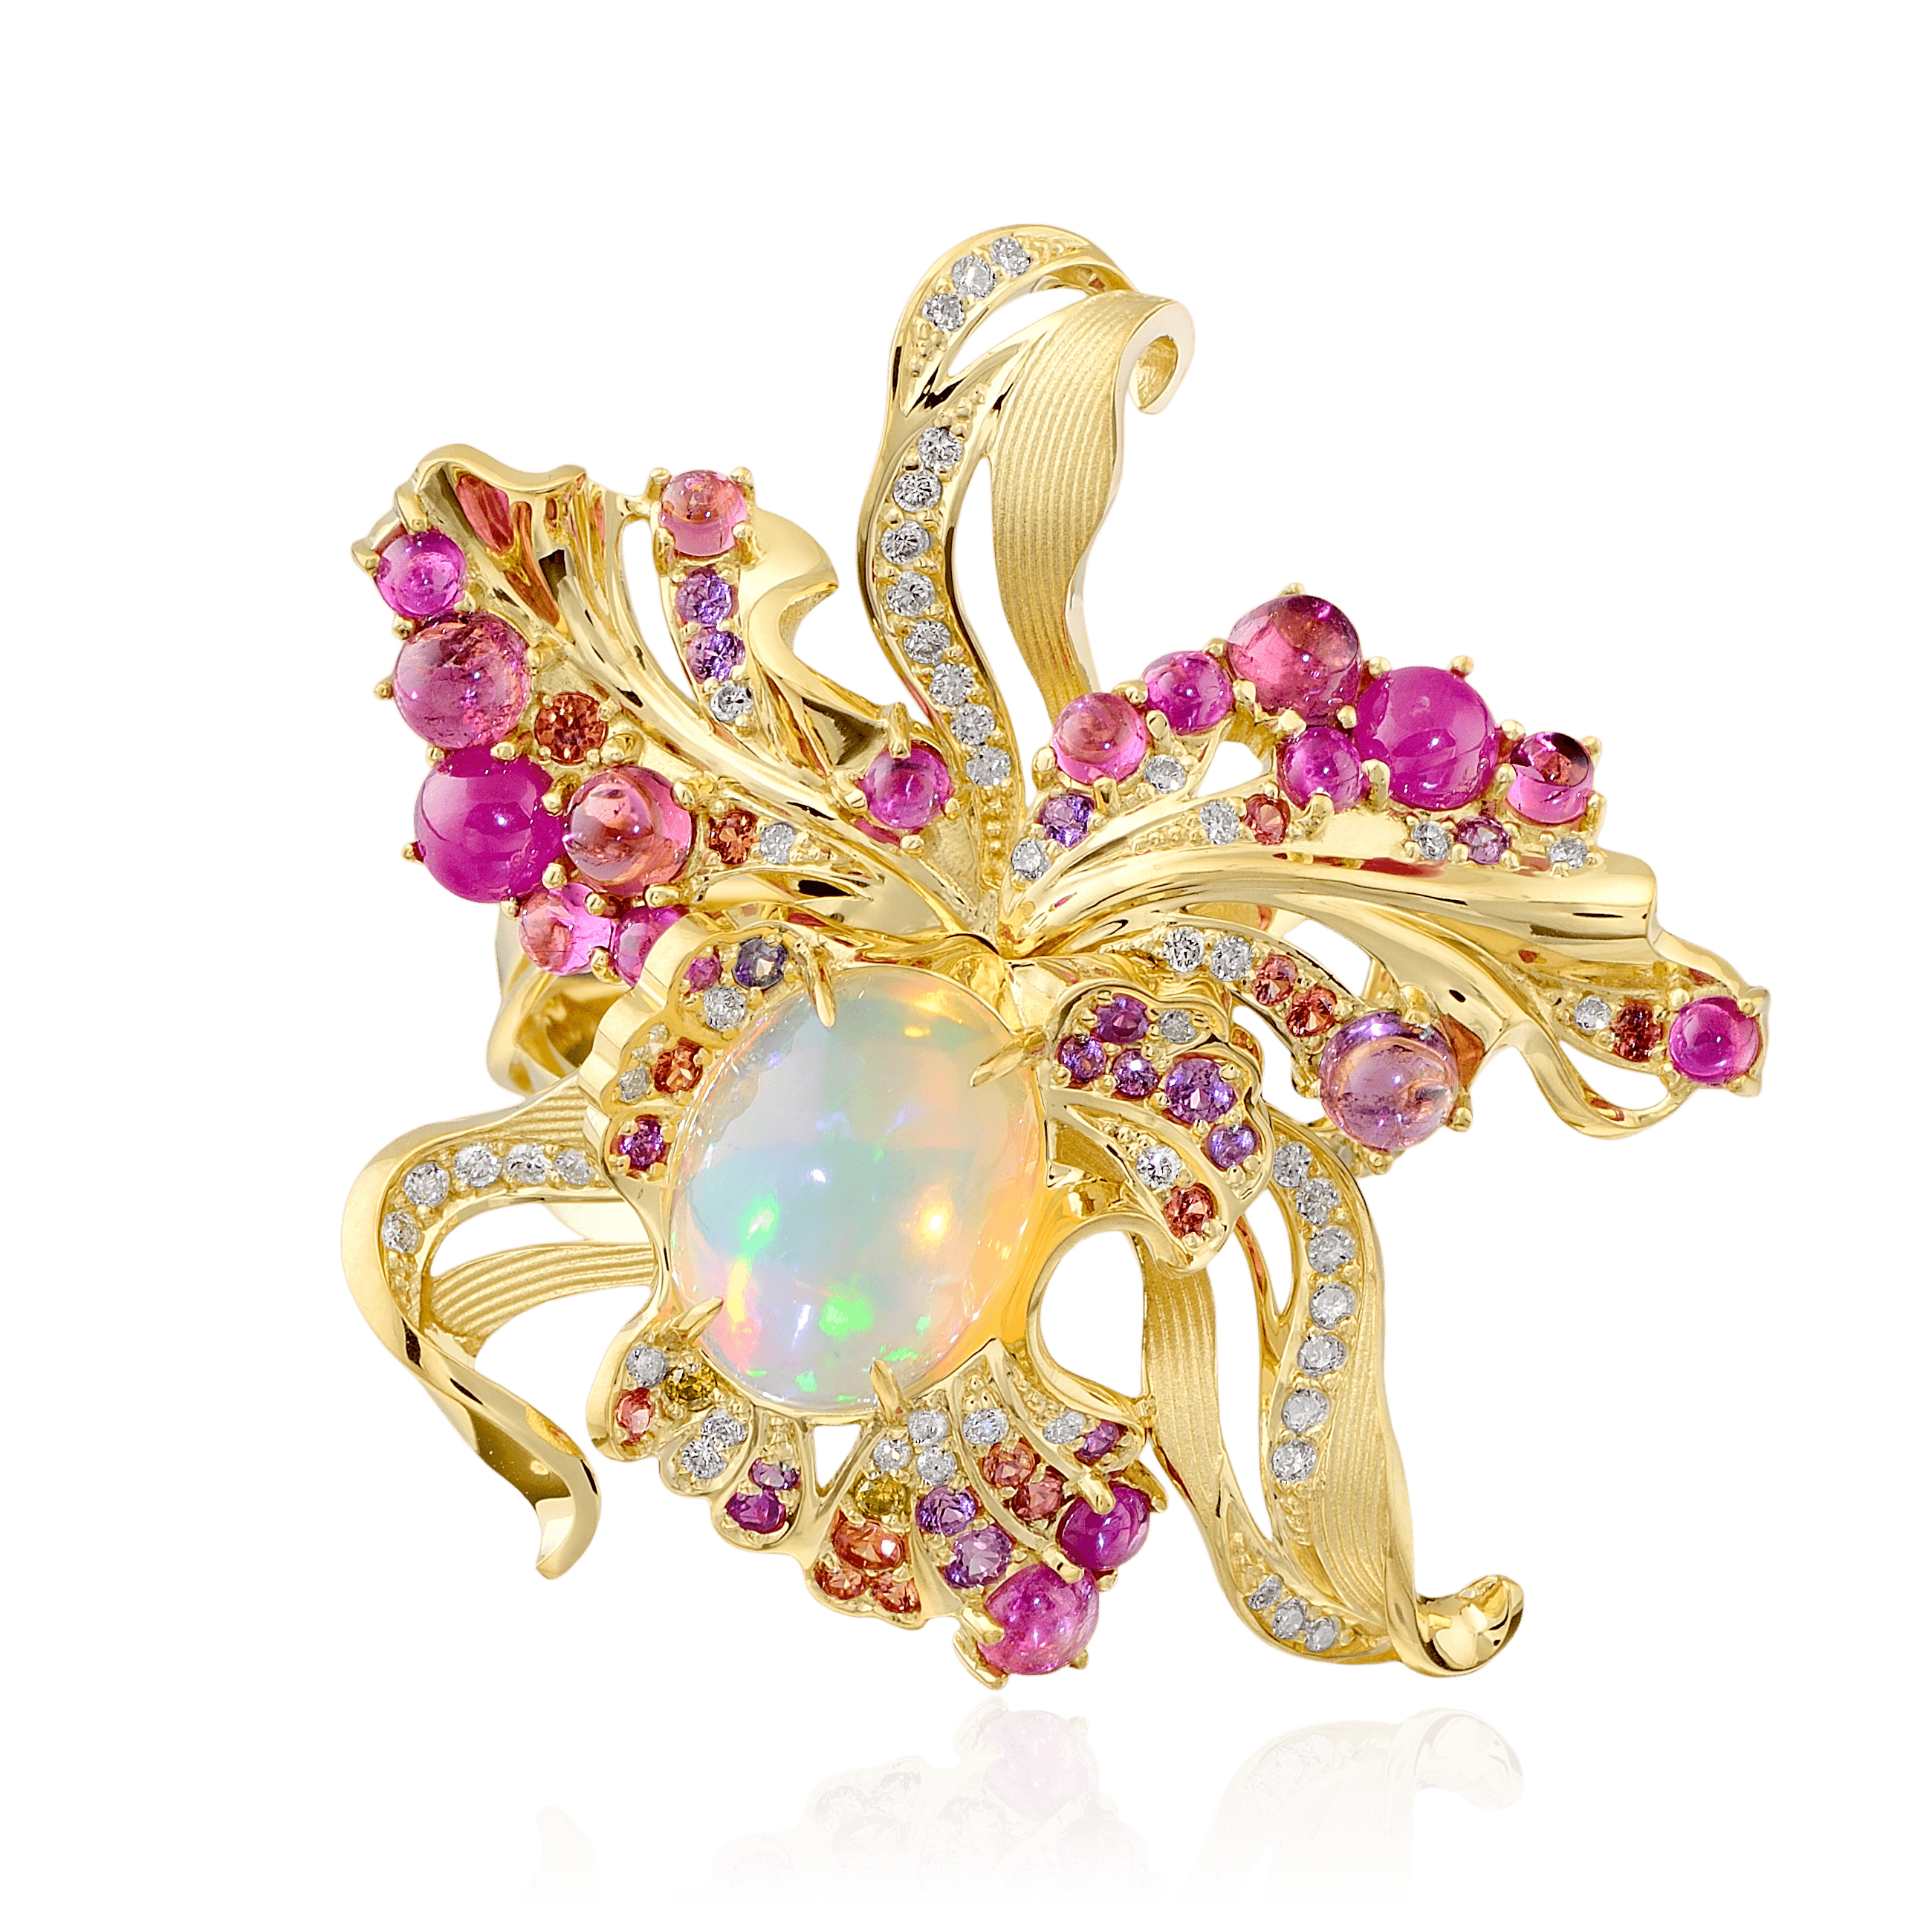 Кольцо Орхидея с опалом, бриллиантами, турмалином, демантоидом, тсаворитом, рубином, сапфиром фантазийным из желтого золота 750 пробы (арт. 37061)